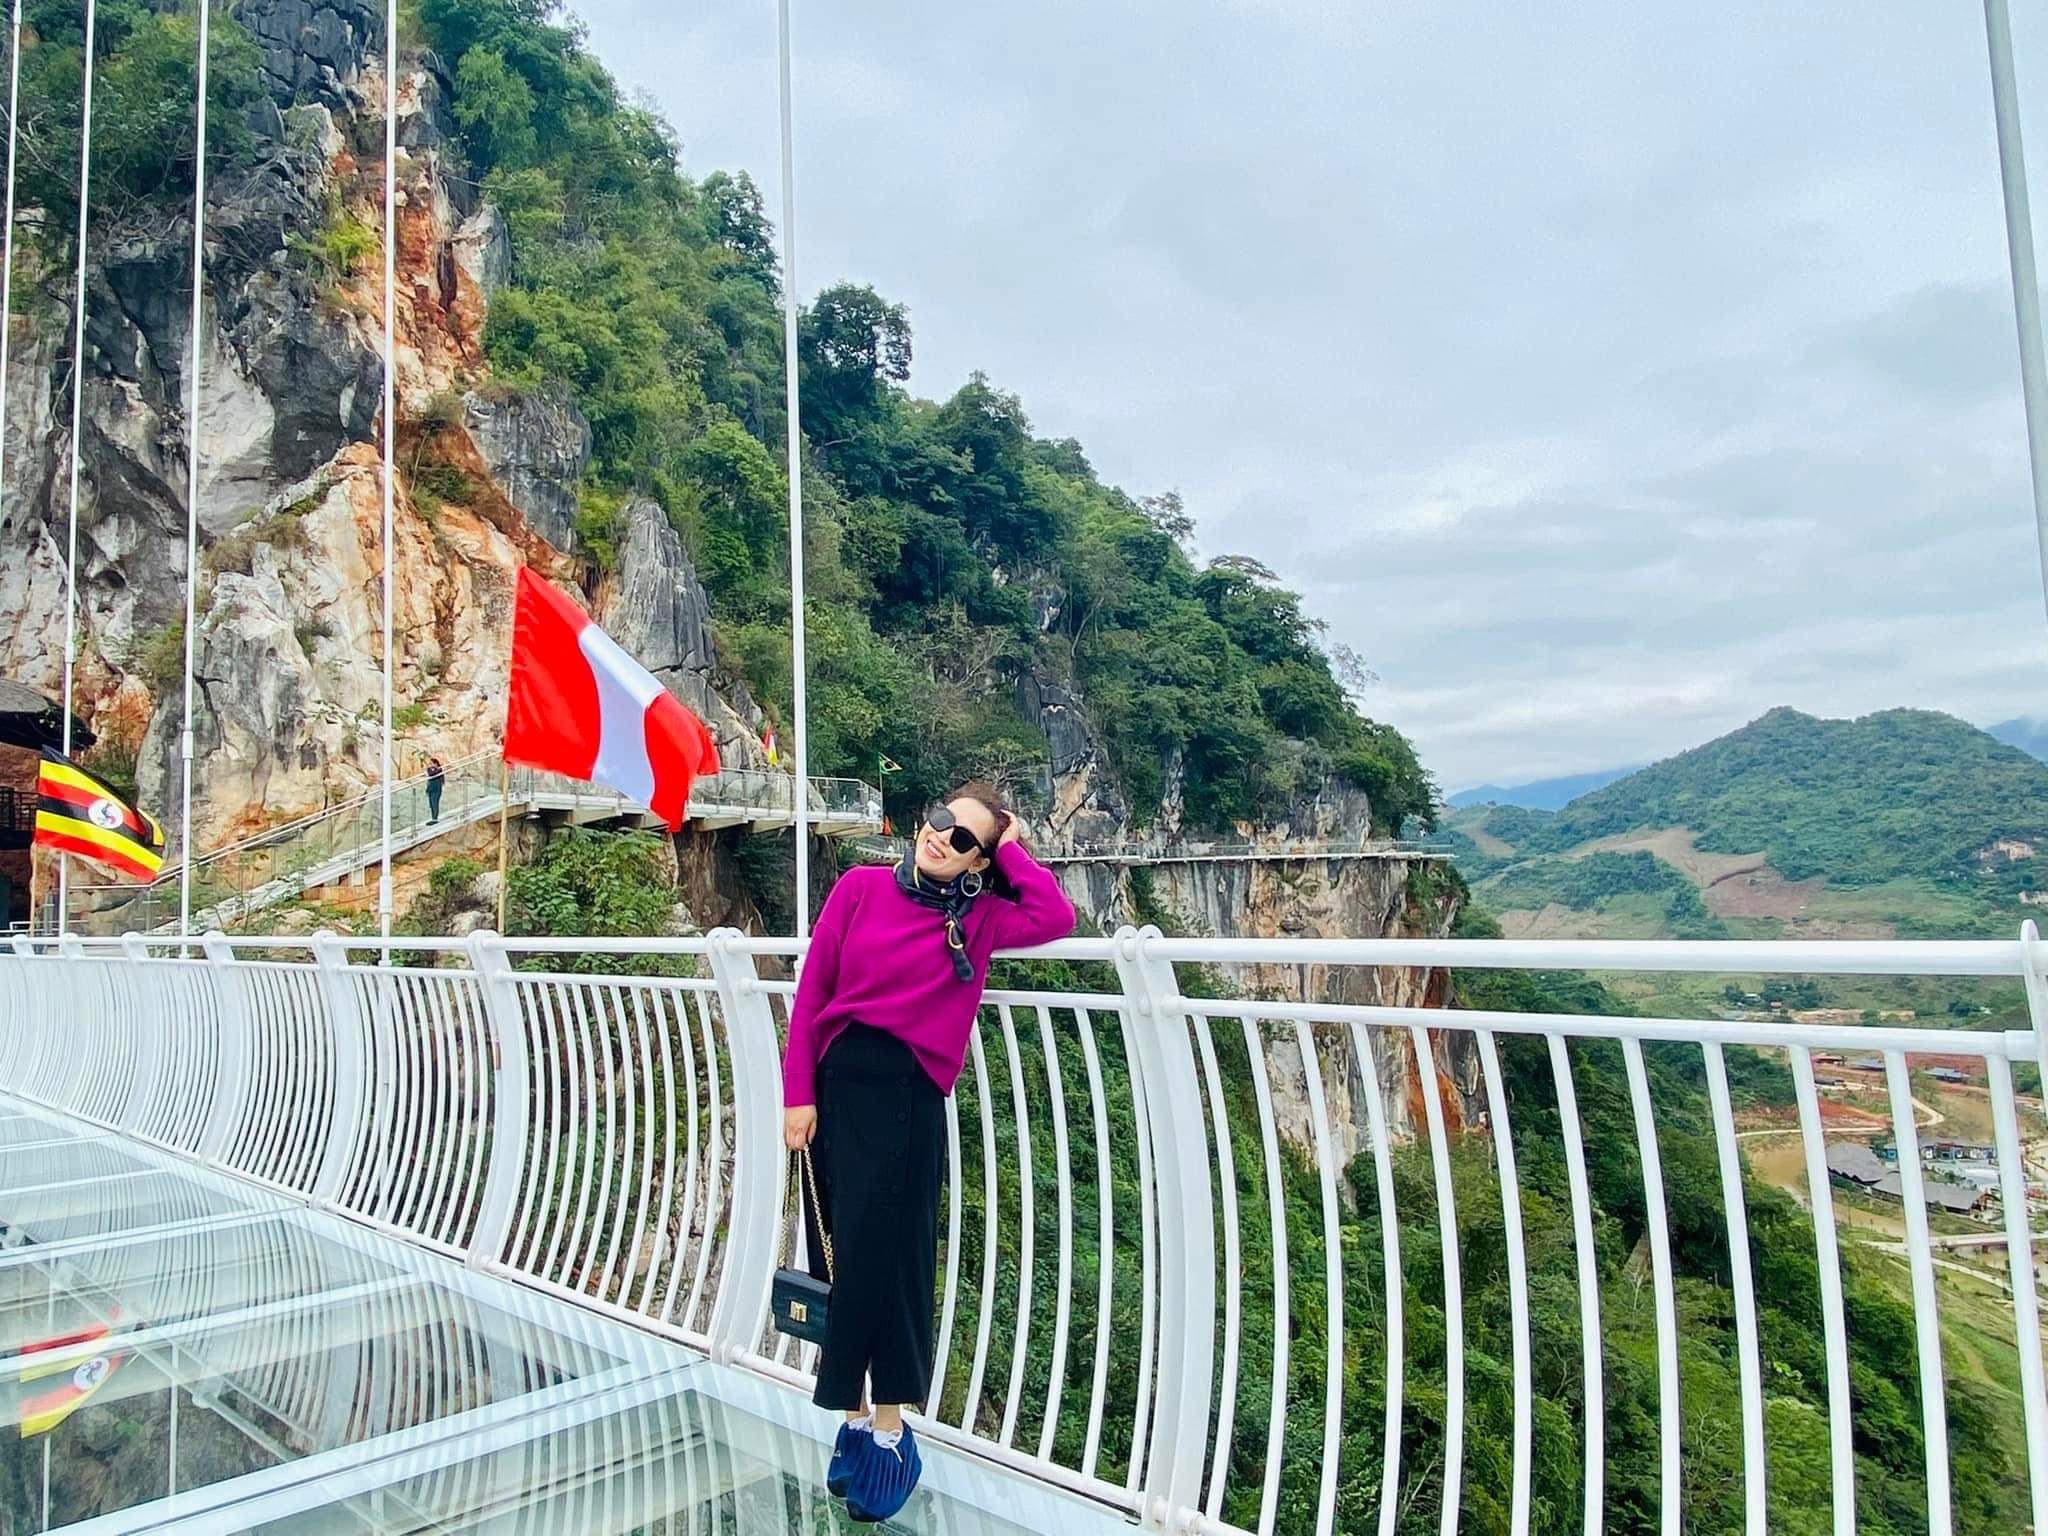 Ngắm nhìn vẻ đẹp cây cầu kính dài nhất thế giới ở Mộc Châu